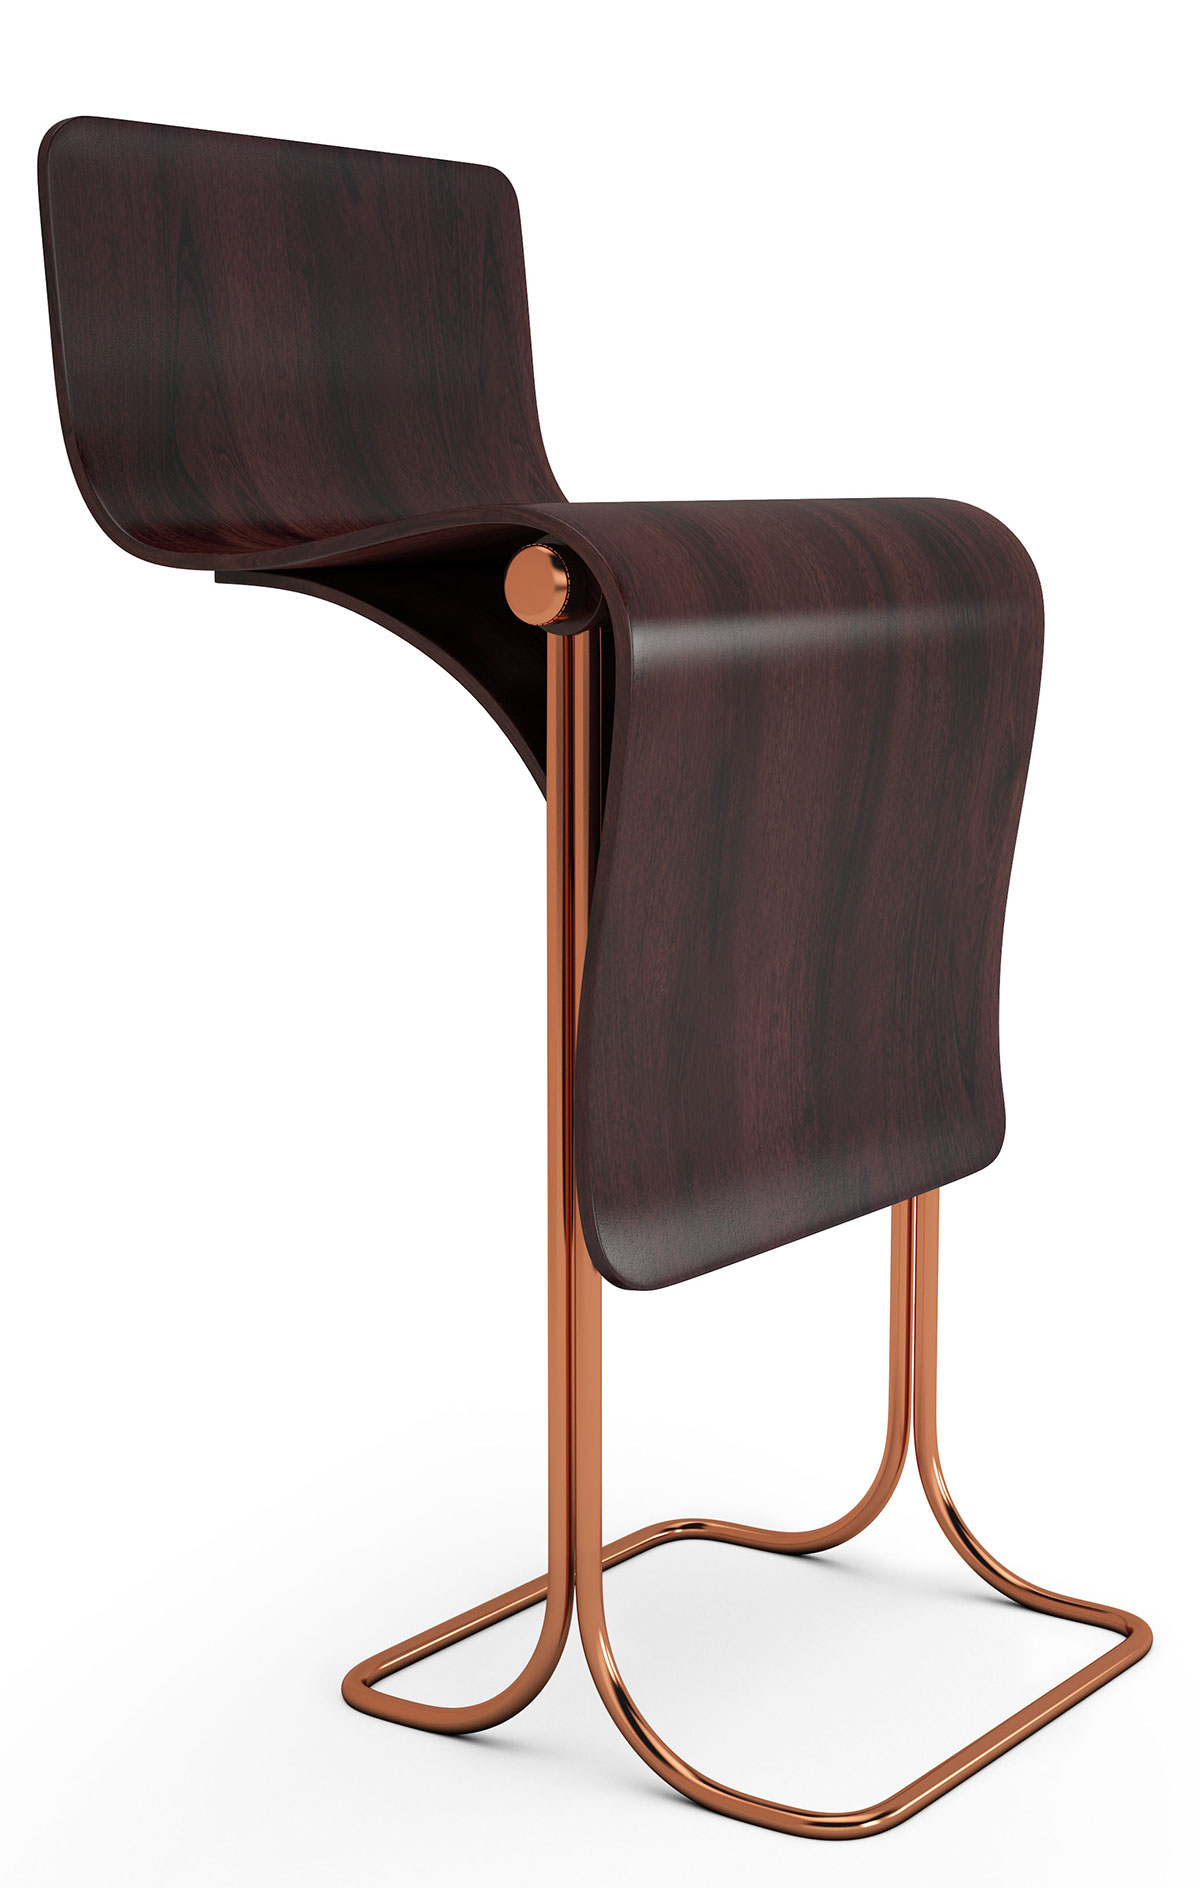 chair Portfolio Center vorticisim design history furniture flip somersault chair